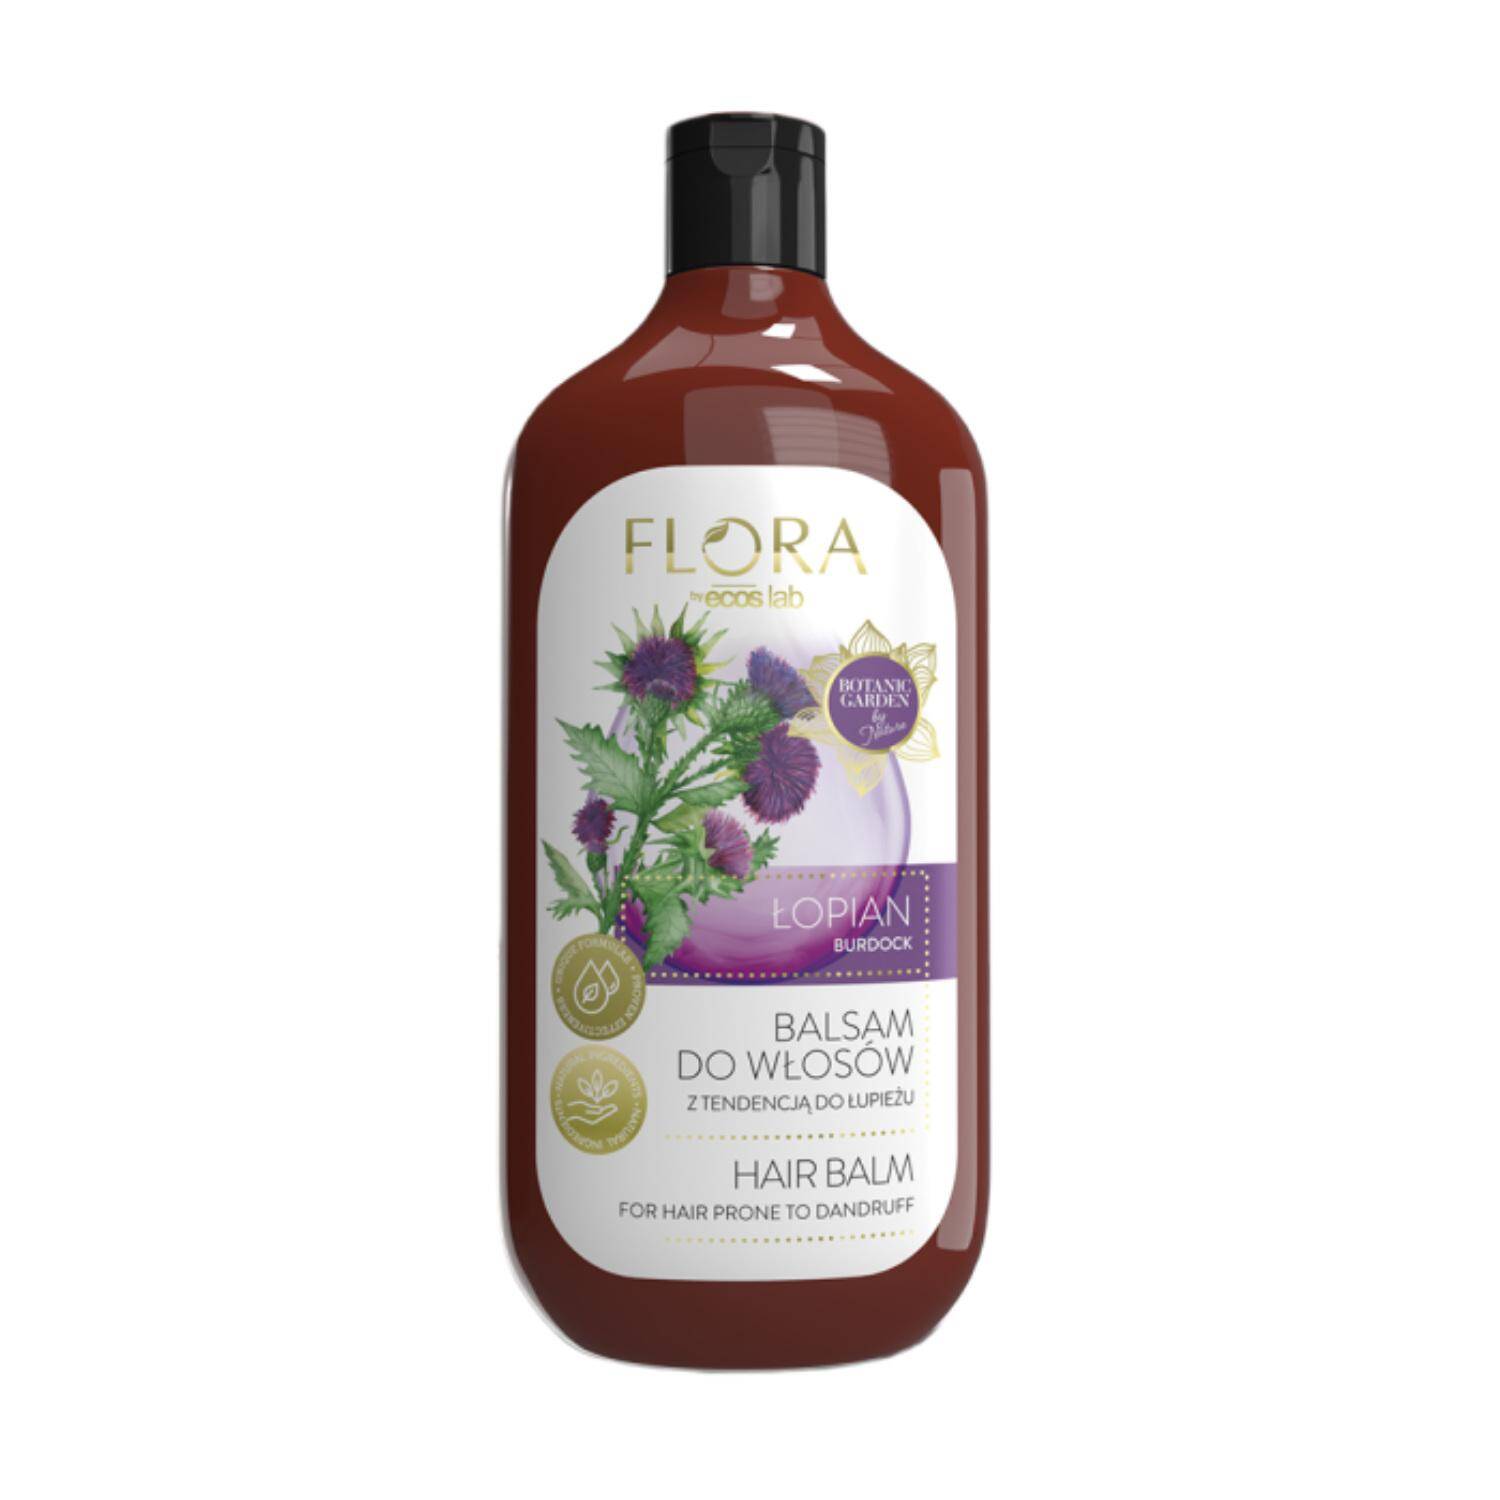 Ecos Lab Flora - balsam do włosów z tendencją do łupieżu, Łopian, 500 ml